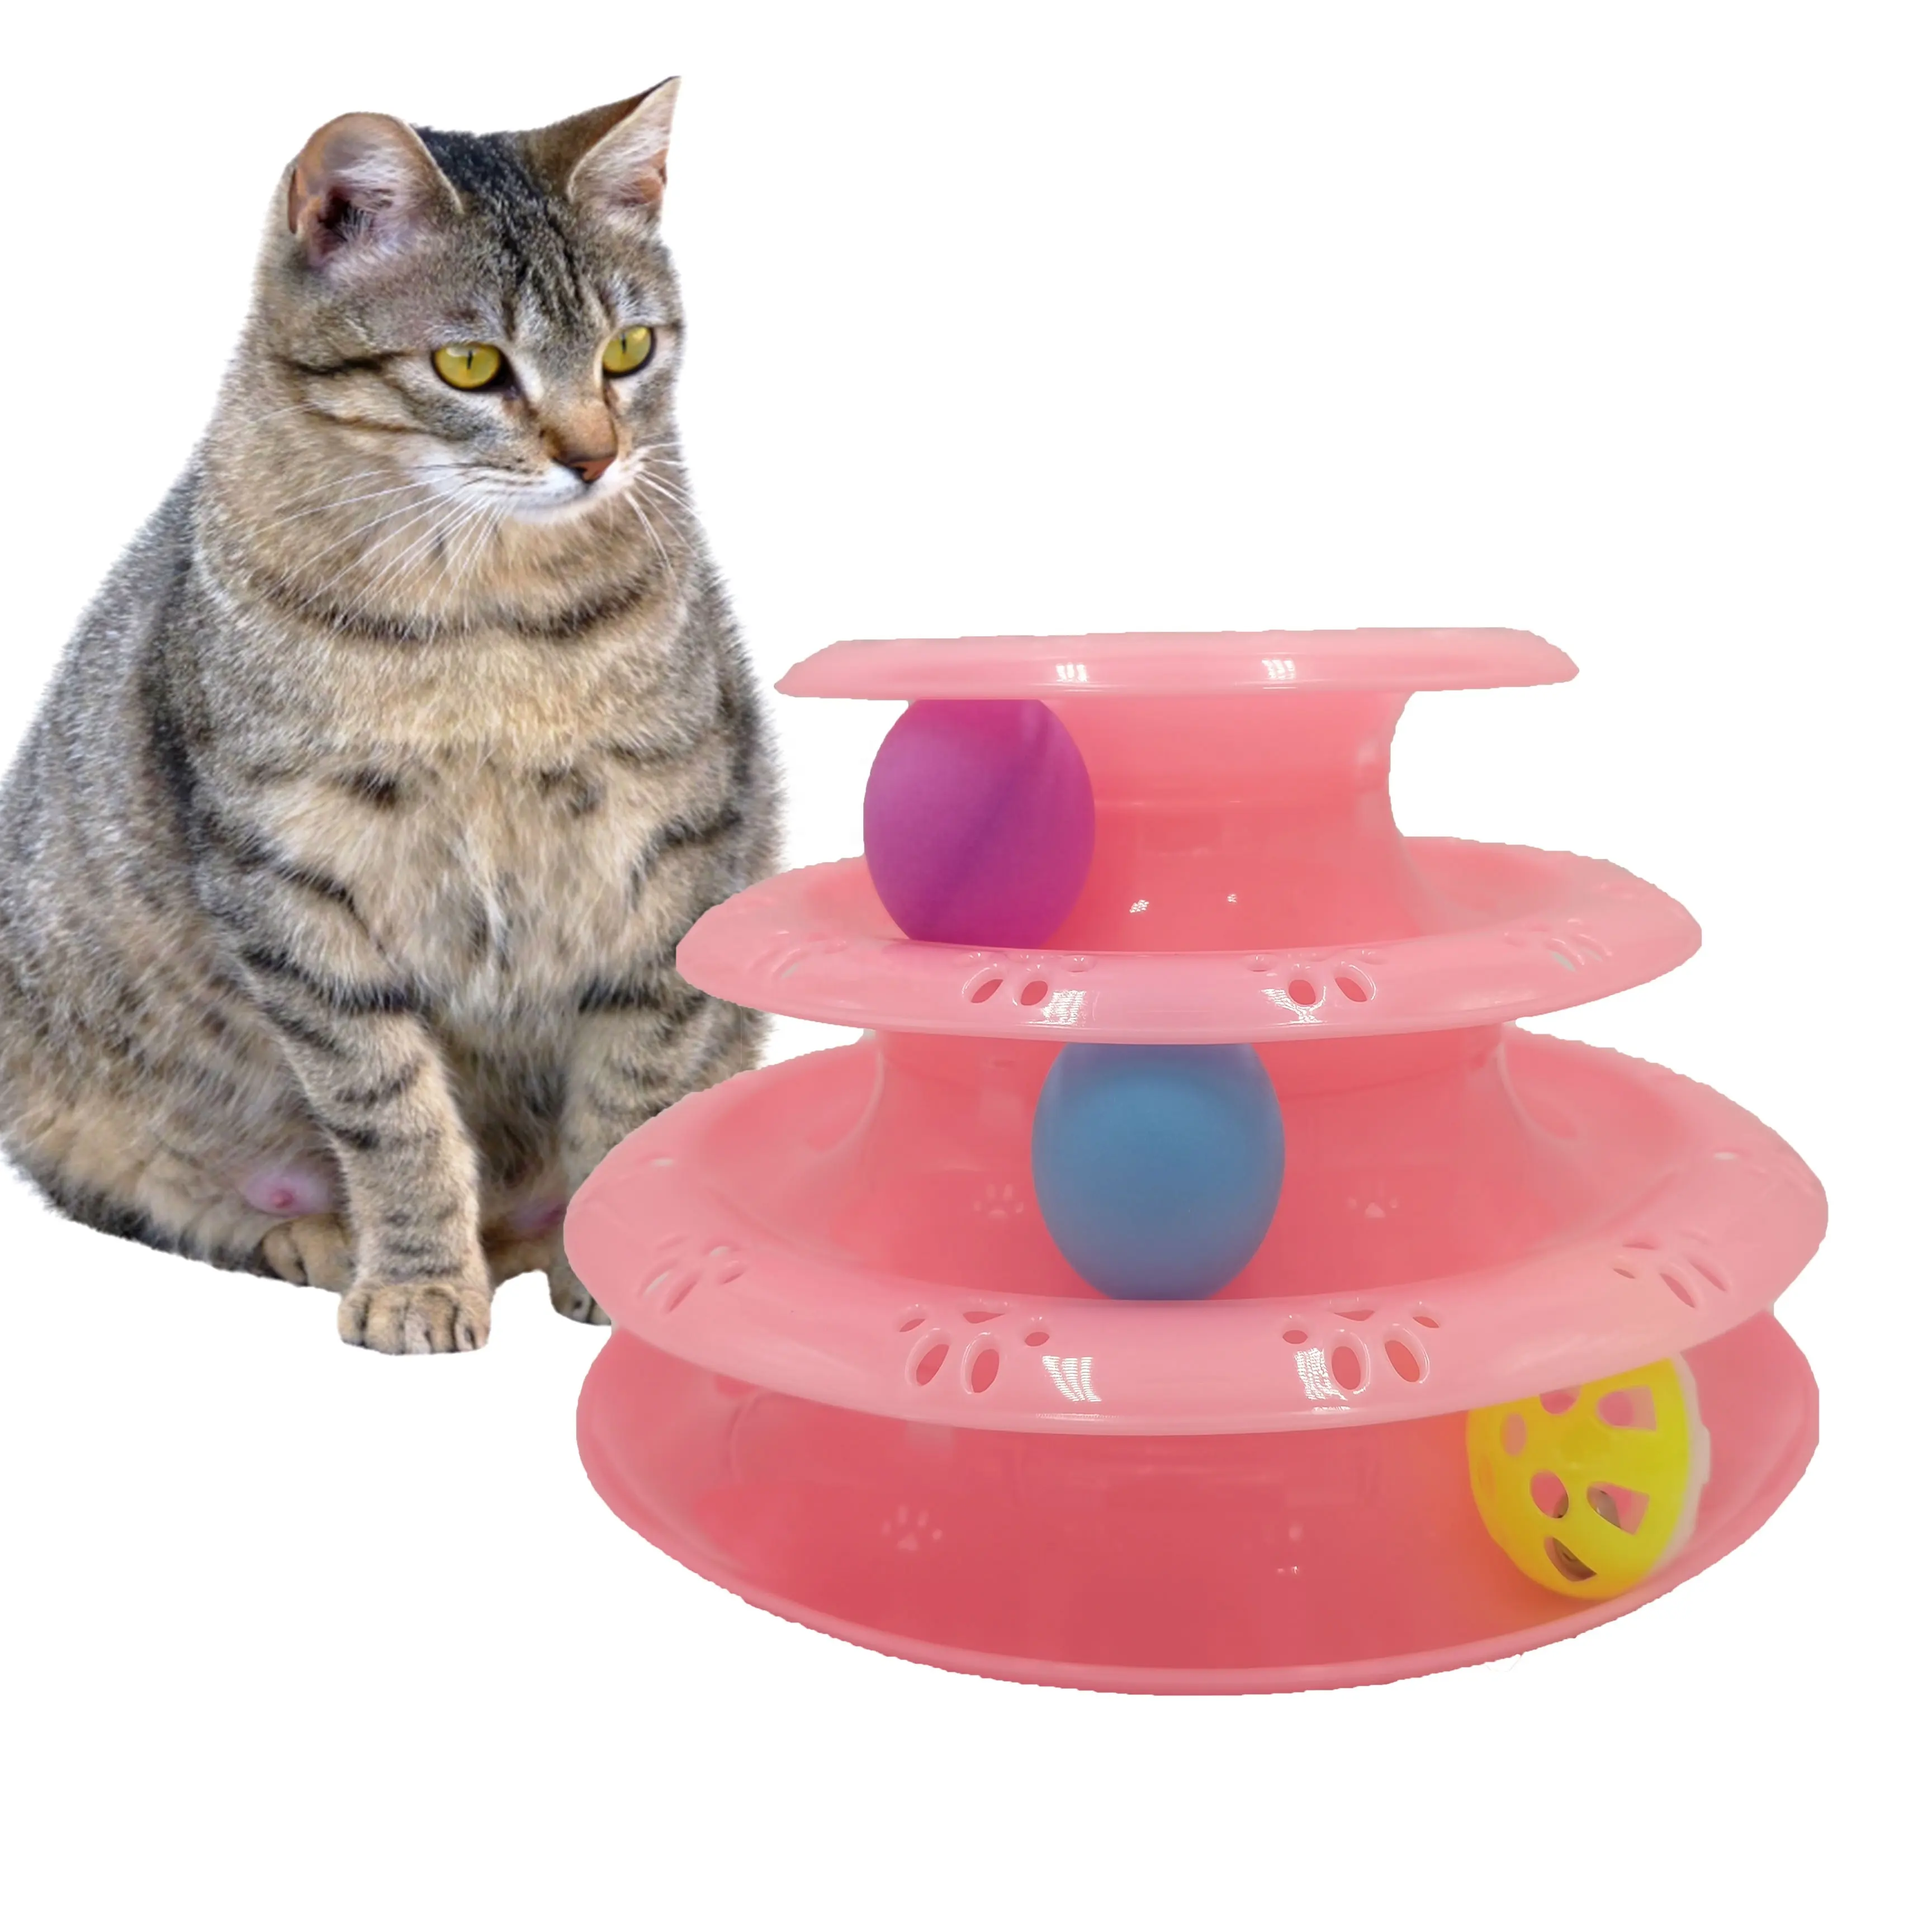 כדורי חיות מחמד צבעוניים מצחיק turftable כדור מטורף חתול אינטראקטיבי עבור מוצרים לחיות מחמד